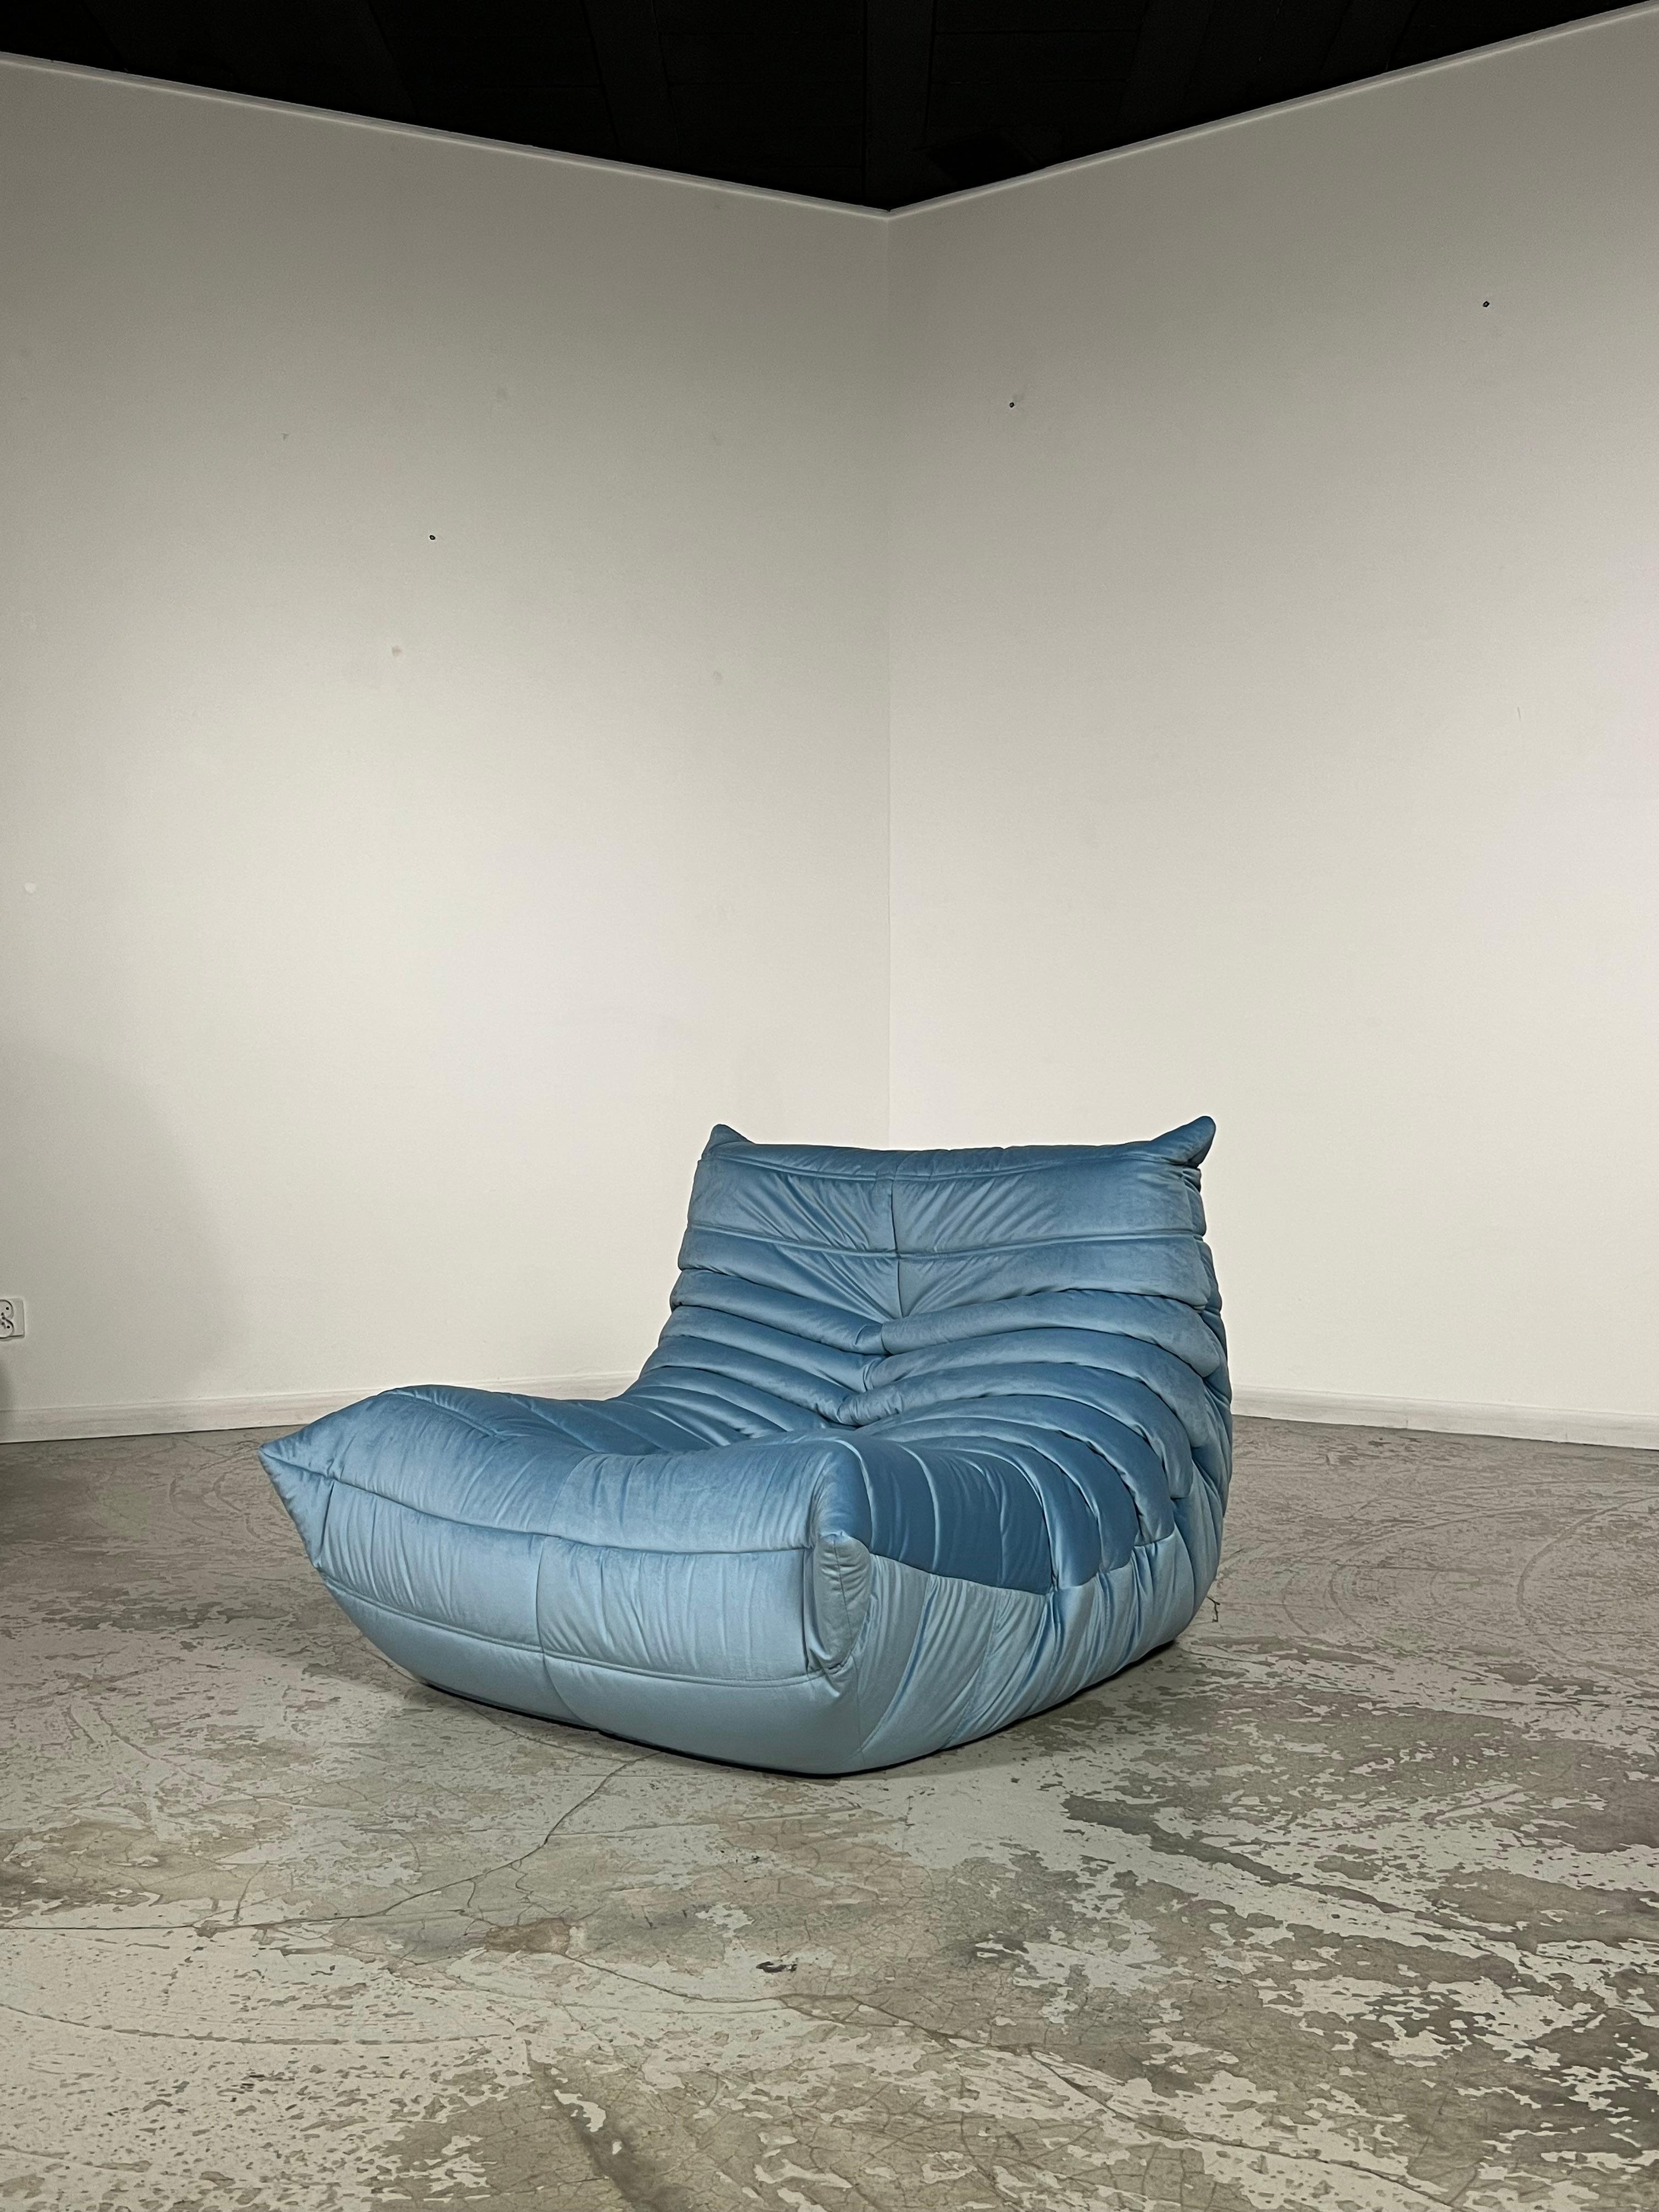 Dieses Sofa wurde in den 1970er Jahren von Michel Ducaroy für Ligne Roset entworfen. Er widmete 26 Jahre seines Lebens der Leitung der Designabteilung von Ligne Roset. Im Jahr 1973 entwarf der Designer seine berühmteste Kreation: das Sofa Togo.